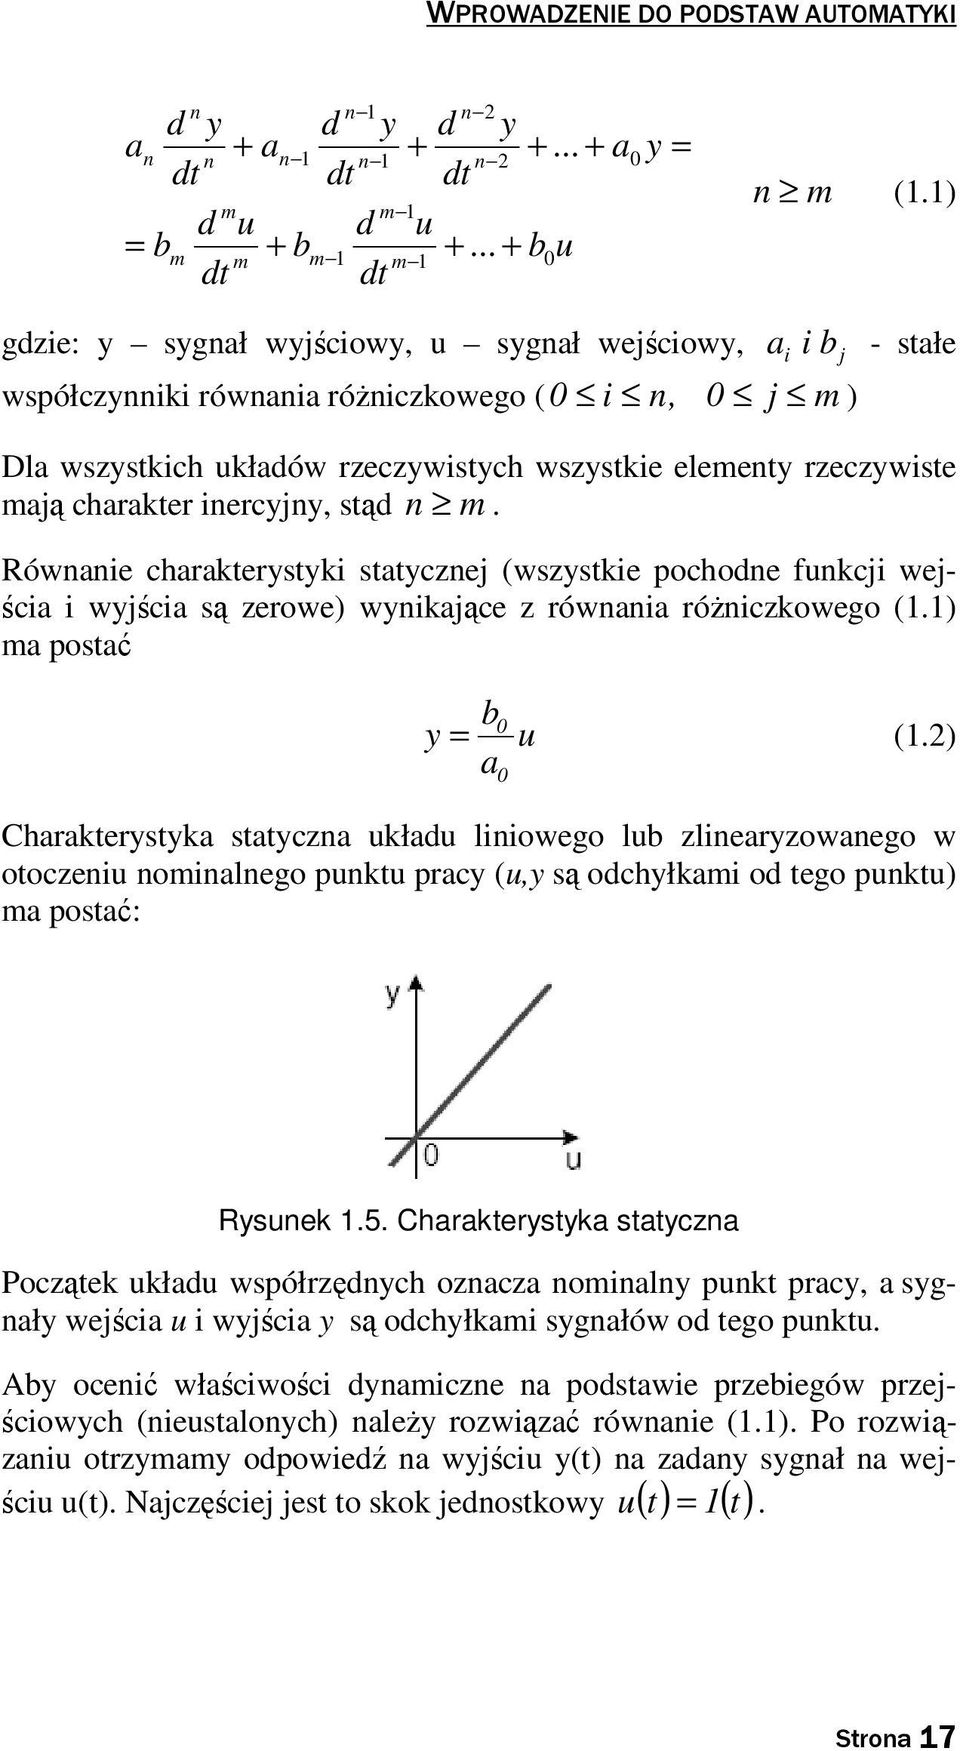 Równanie charakeryyki aycznej (wzykie pochodne funkcji wejścia i wyjścia ą zerowe) wynikające z równania róŝniczkowego (.) ma poać b y u (.